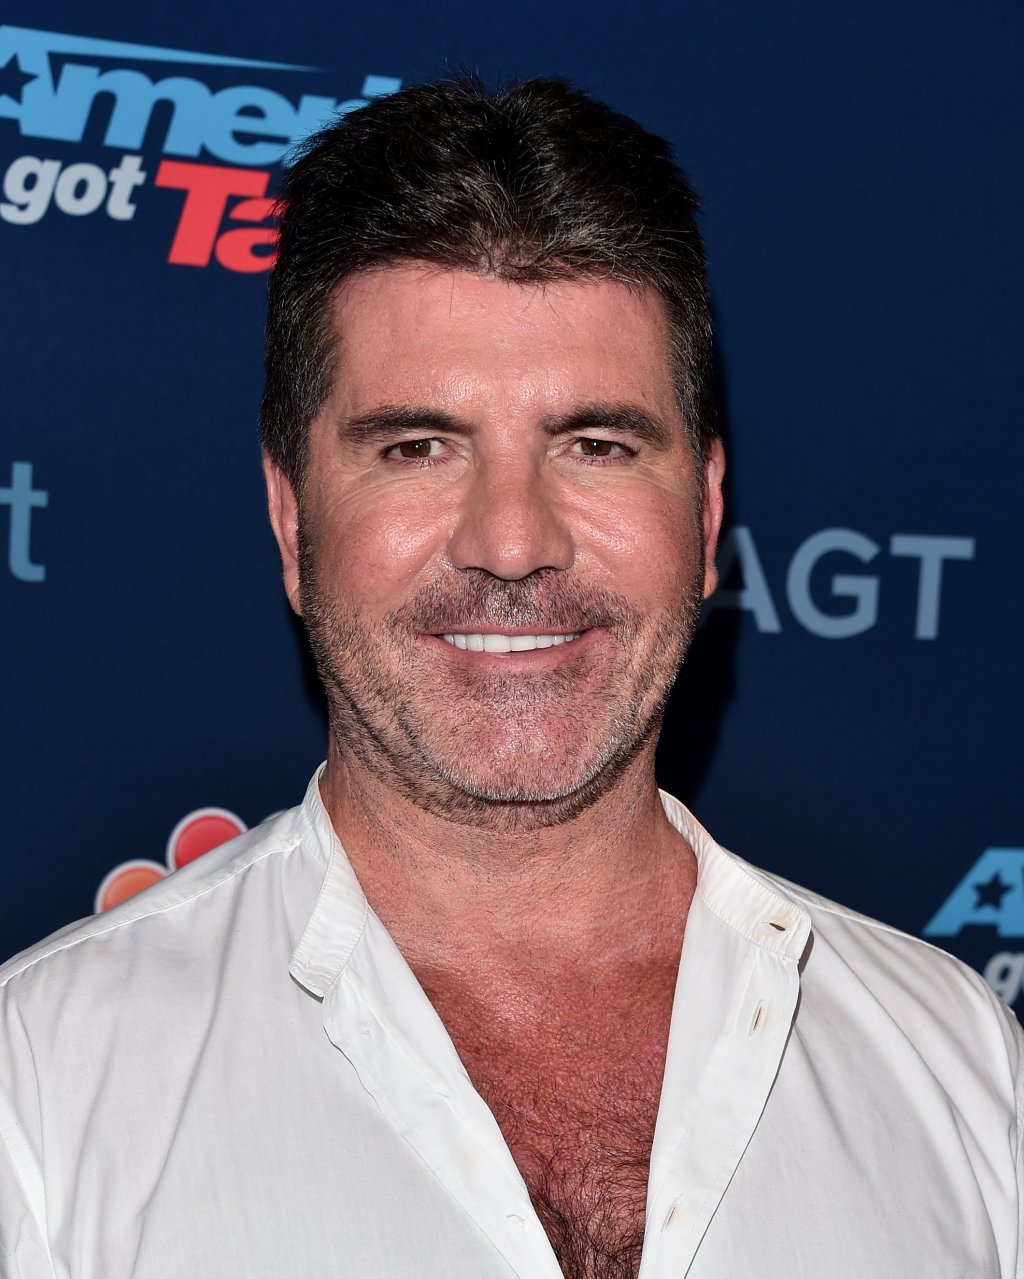 Simon Cowell com blusa branca sorrindo em fundo azul